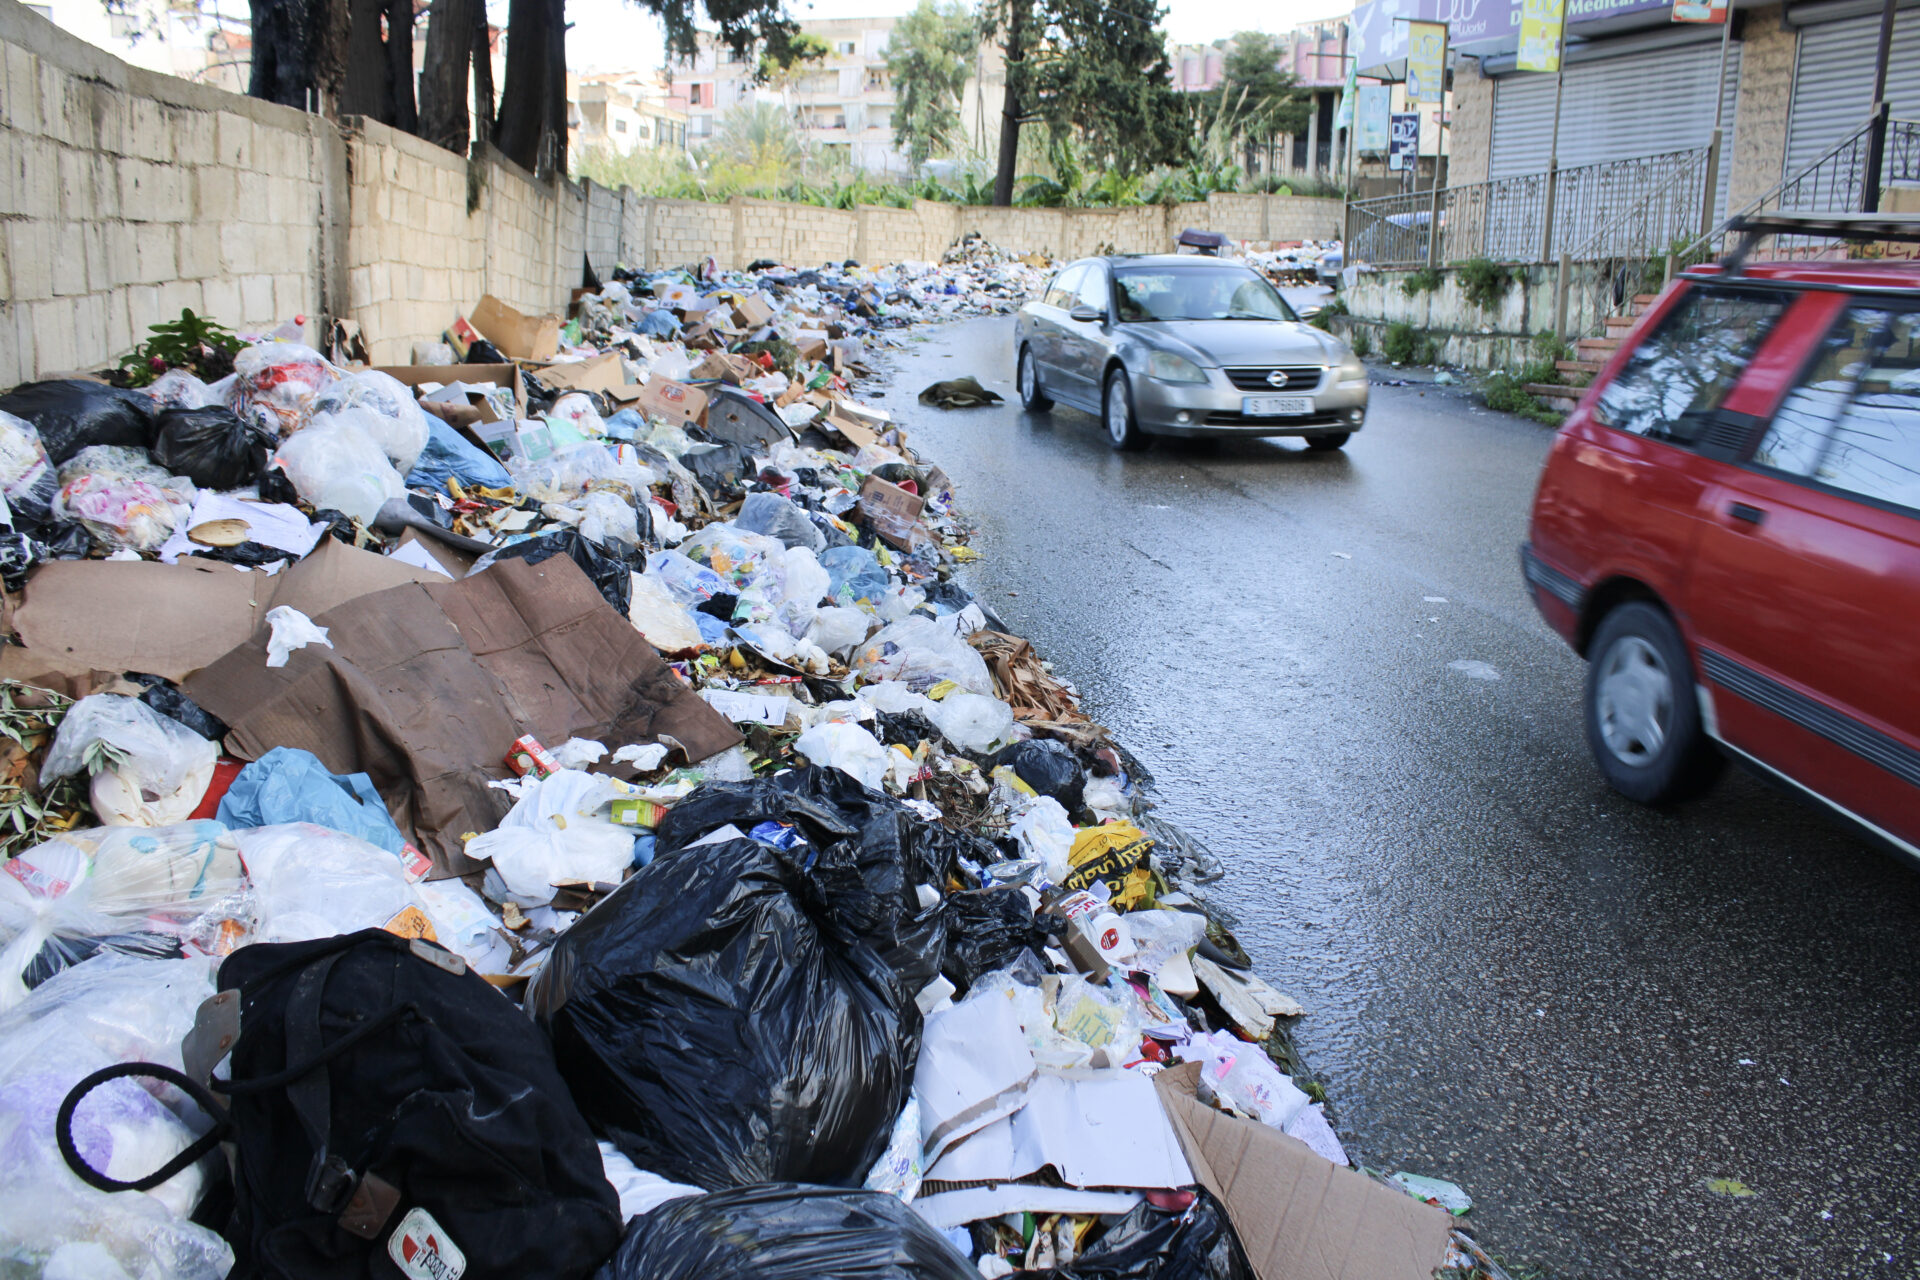 Trash piles high along the street in Saida (Hanna Davis)